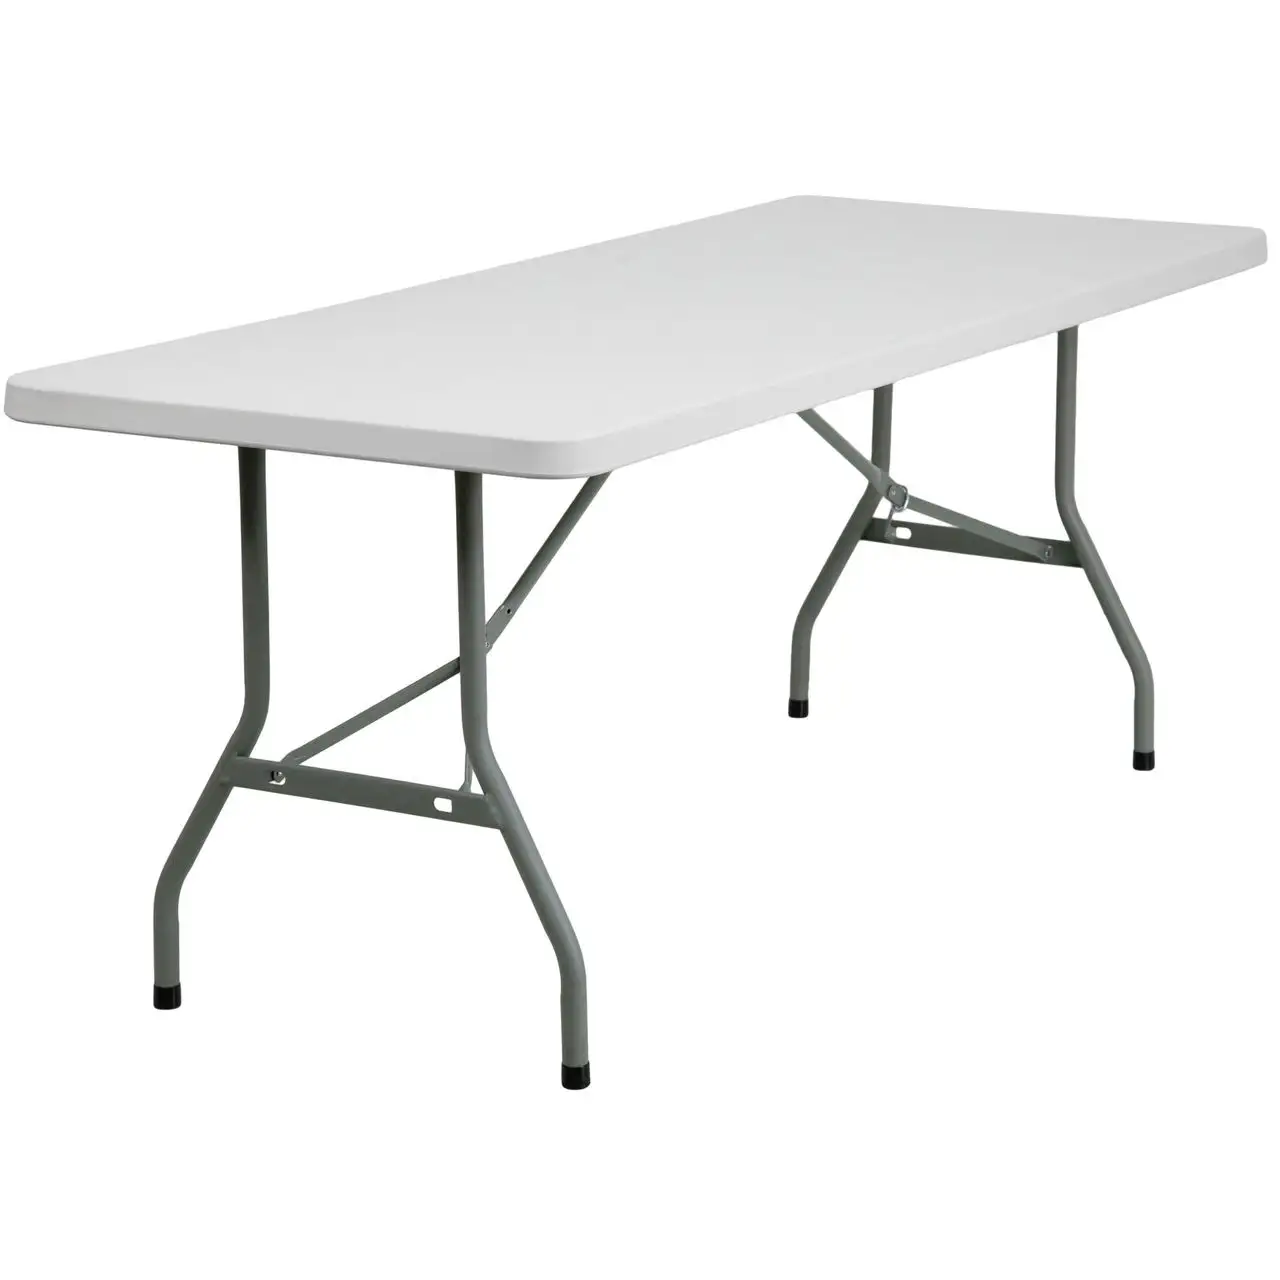 Прямая поставка с завода, низкая цена, преимущество EN 581, 6 футов. (30X72) Прямоугольный белый портативный пластиковый складной стол